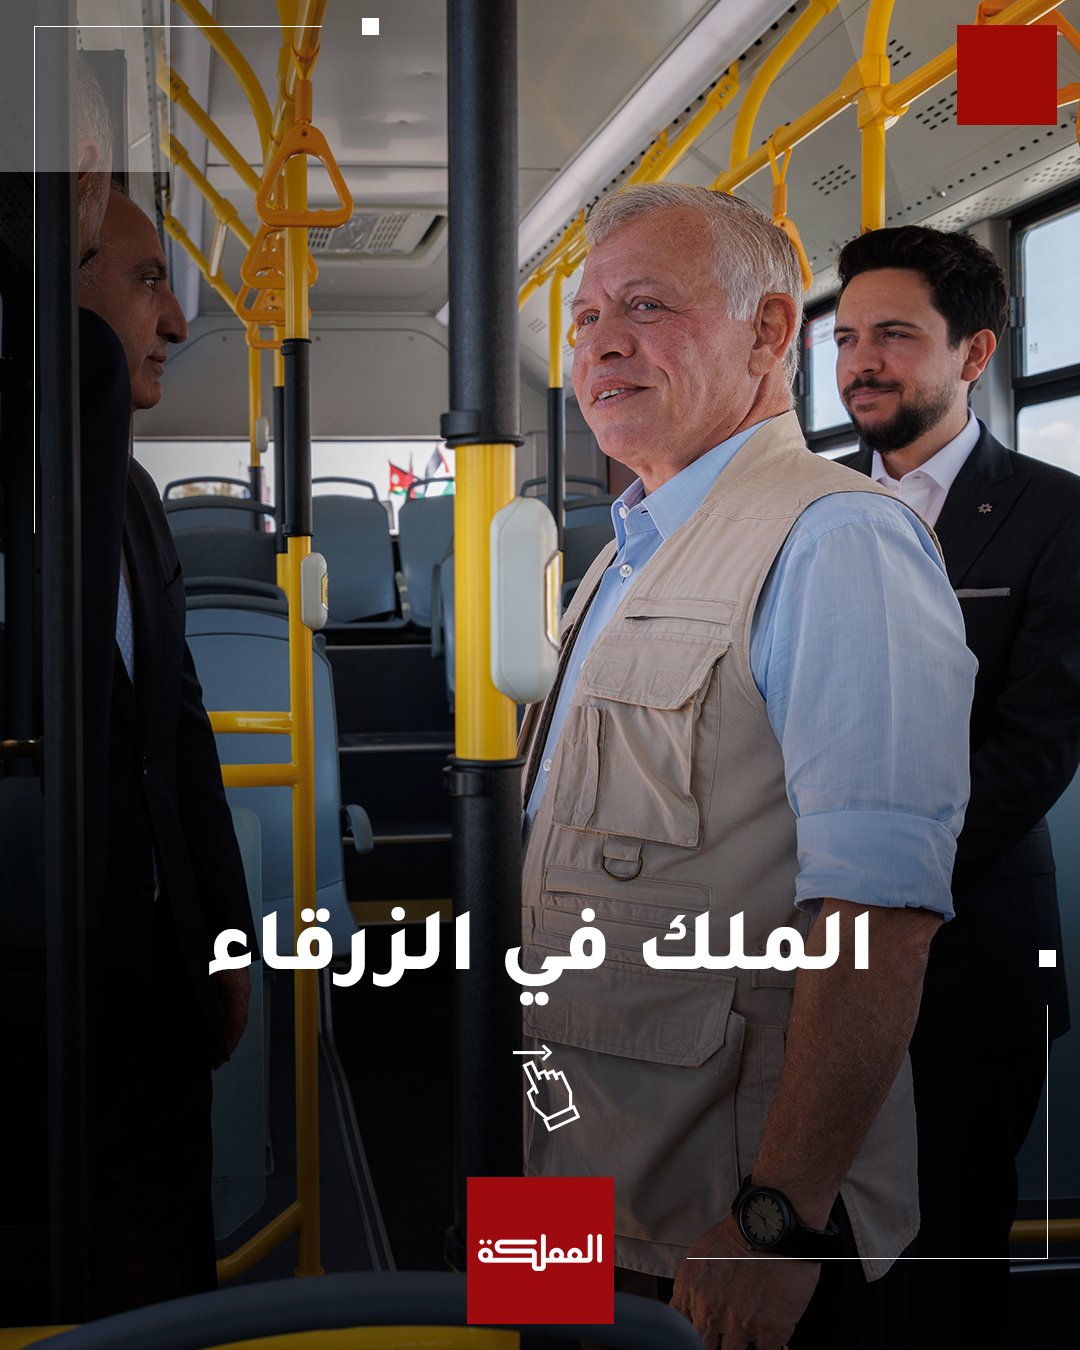 مقتطفات من زيارة الملك لمحافظة الزرقاء وافتتاحه مشروع حافلات التردد السريع بين عمّان والزرقاء وزيارته لمصنع "المعيارية للصناعات الخرسانية" #الأردن 